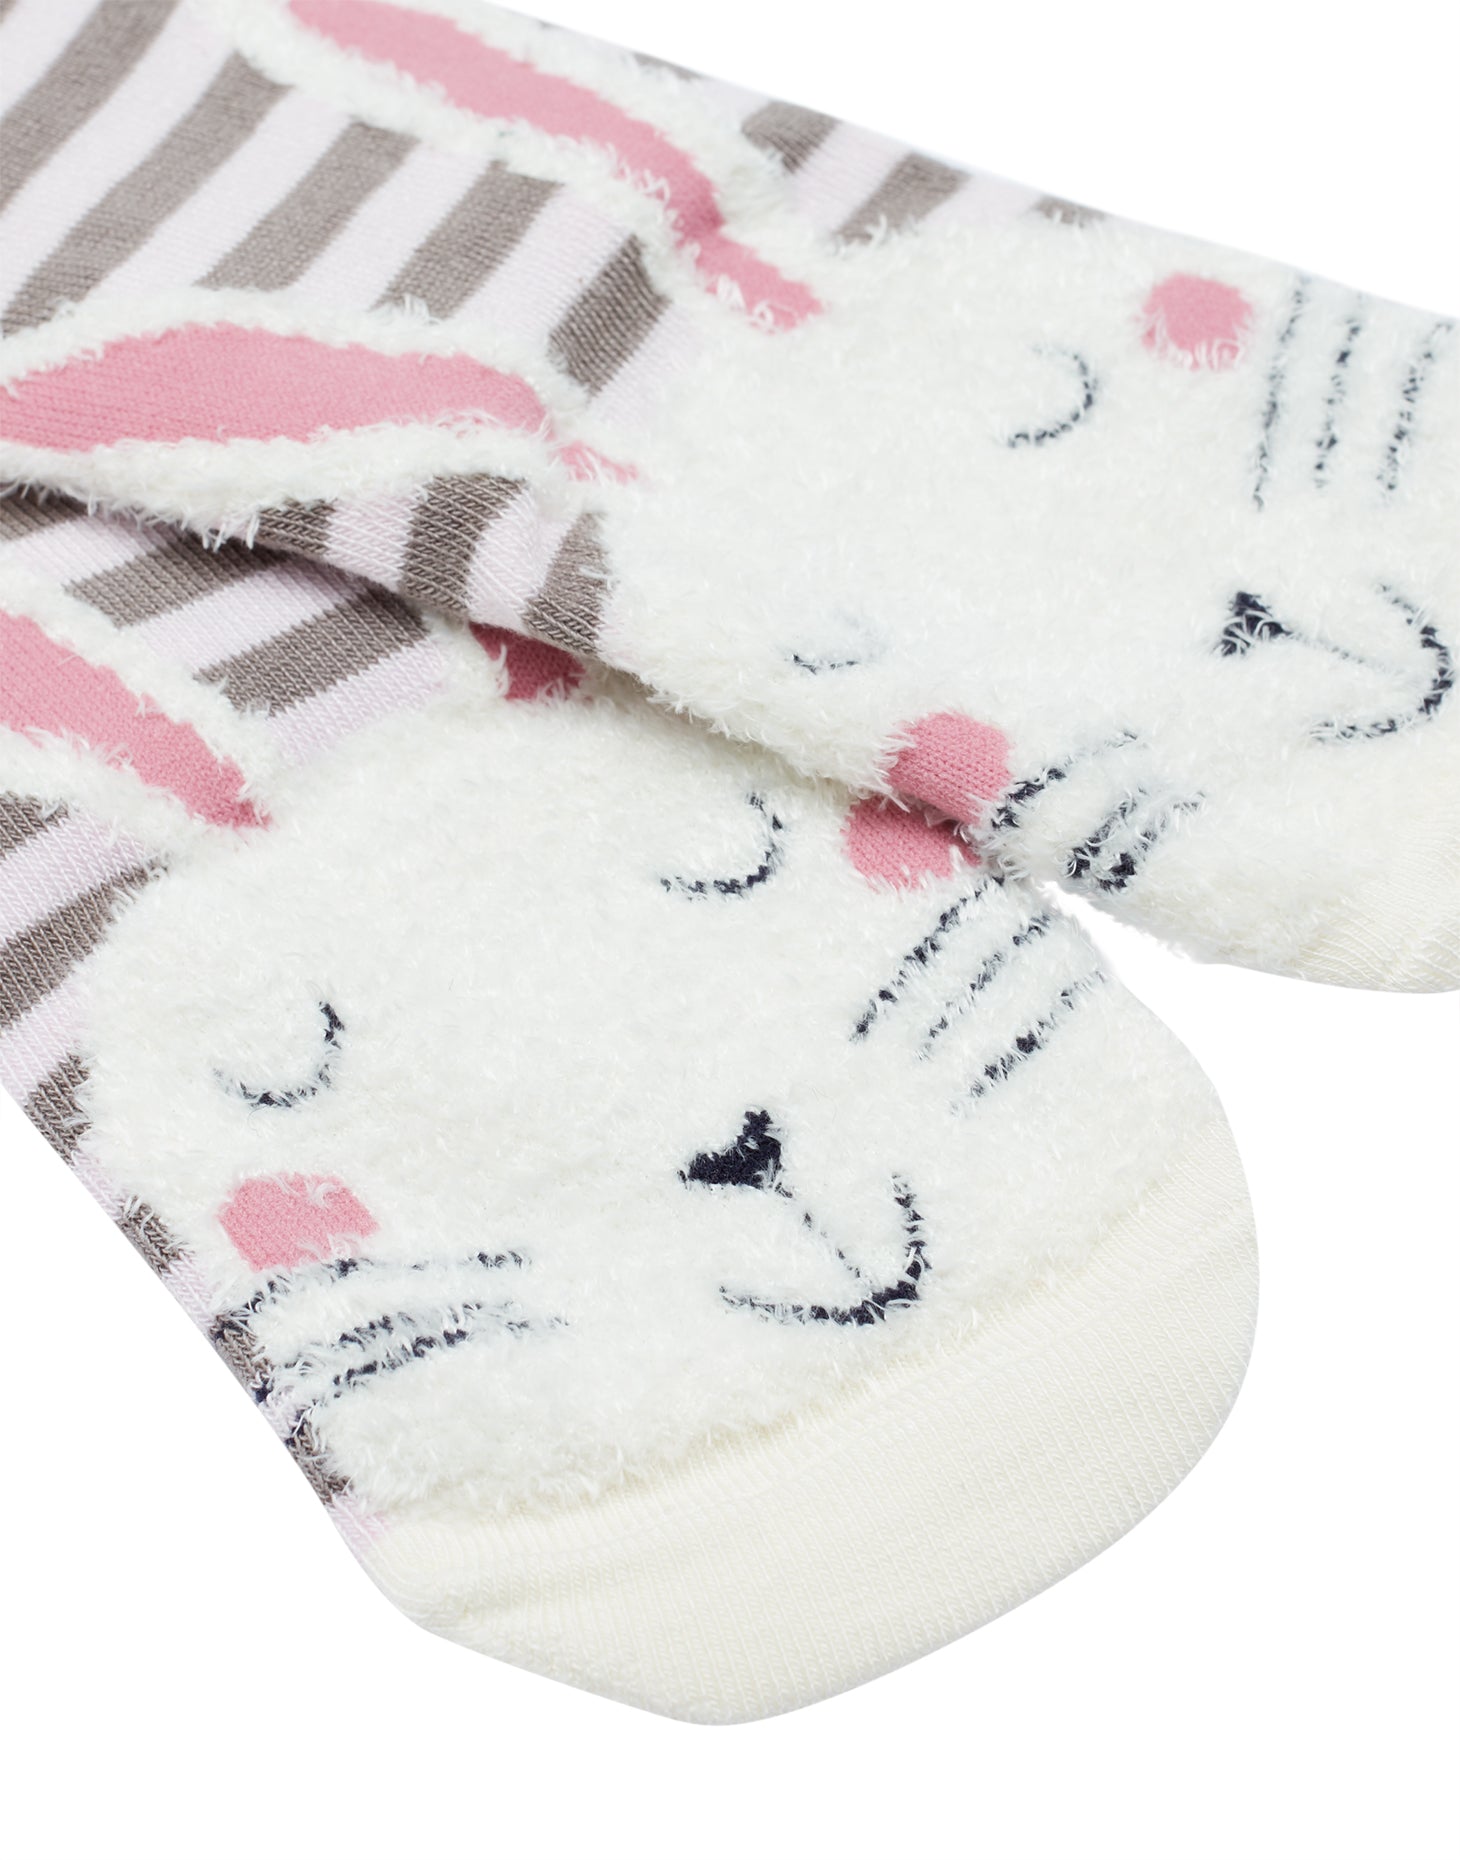 Pink Stripe Bunny Socks